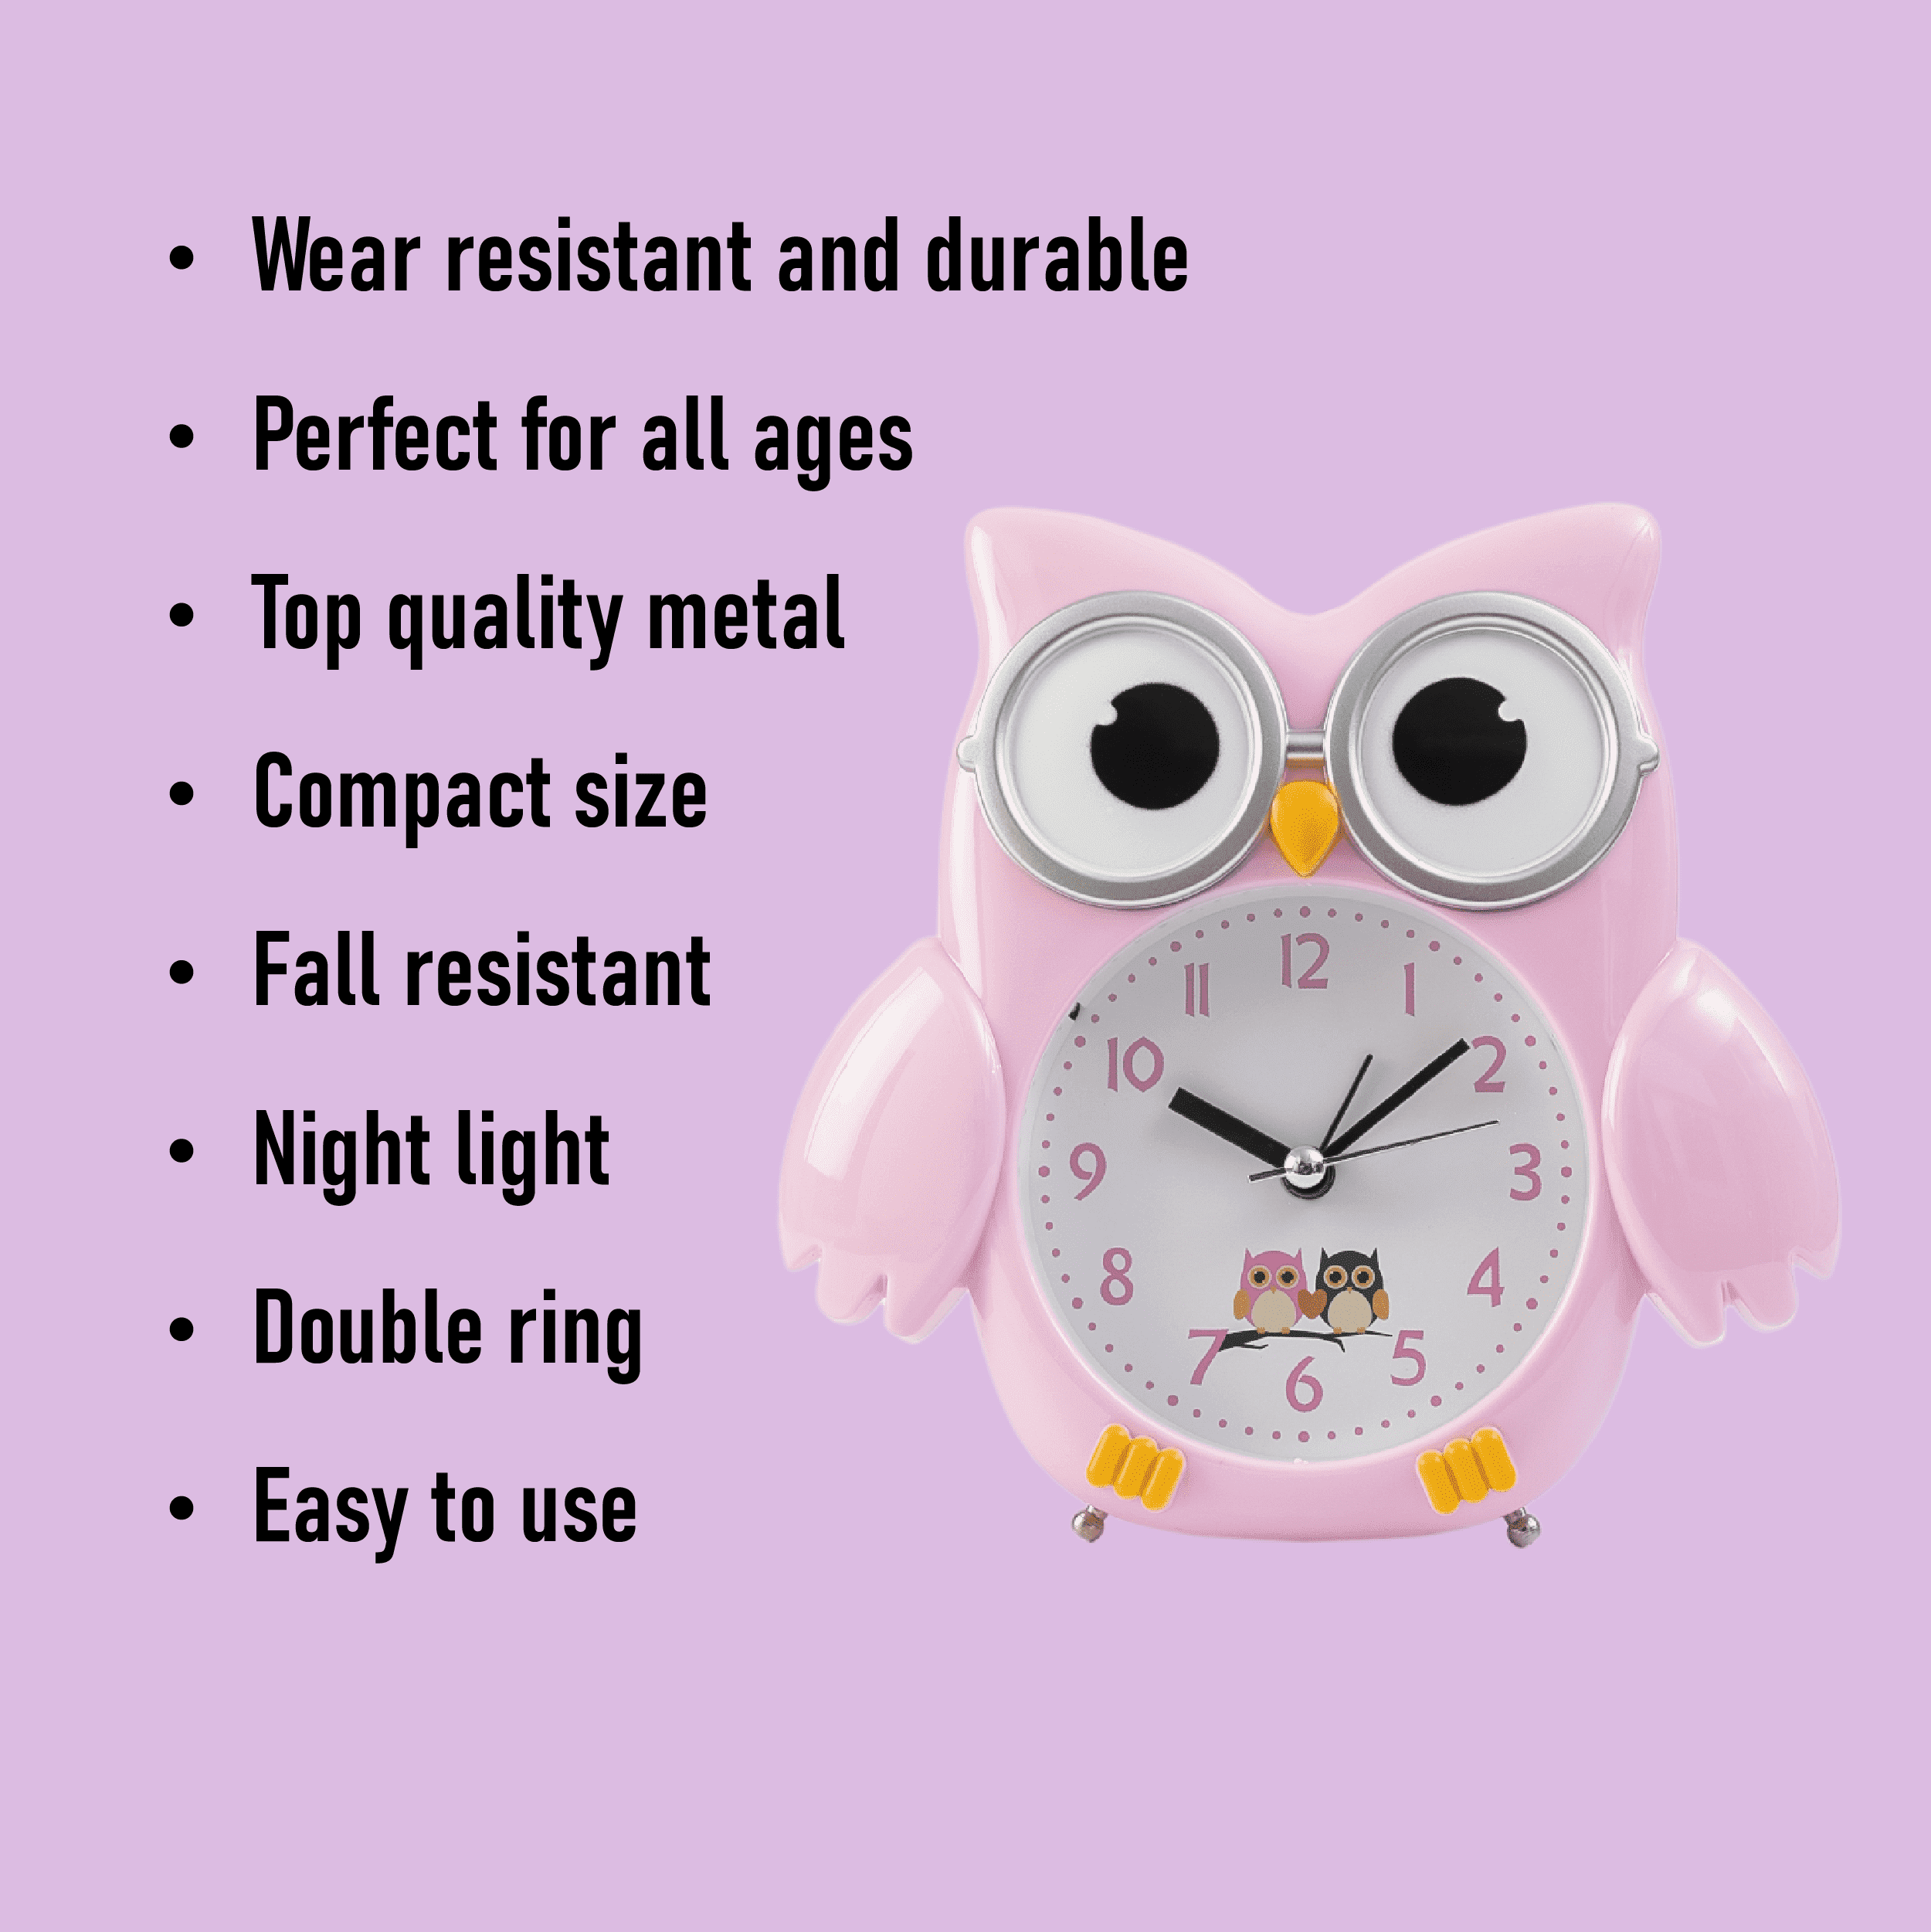 Alarm Clock Metal Owl - Pink